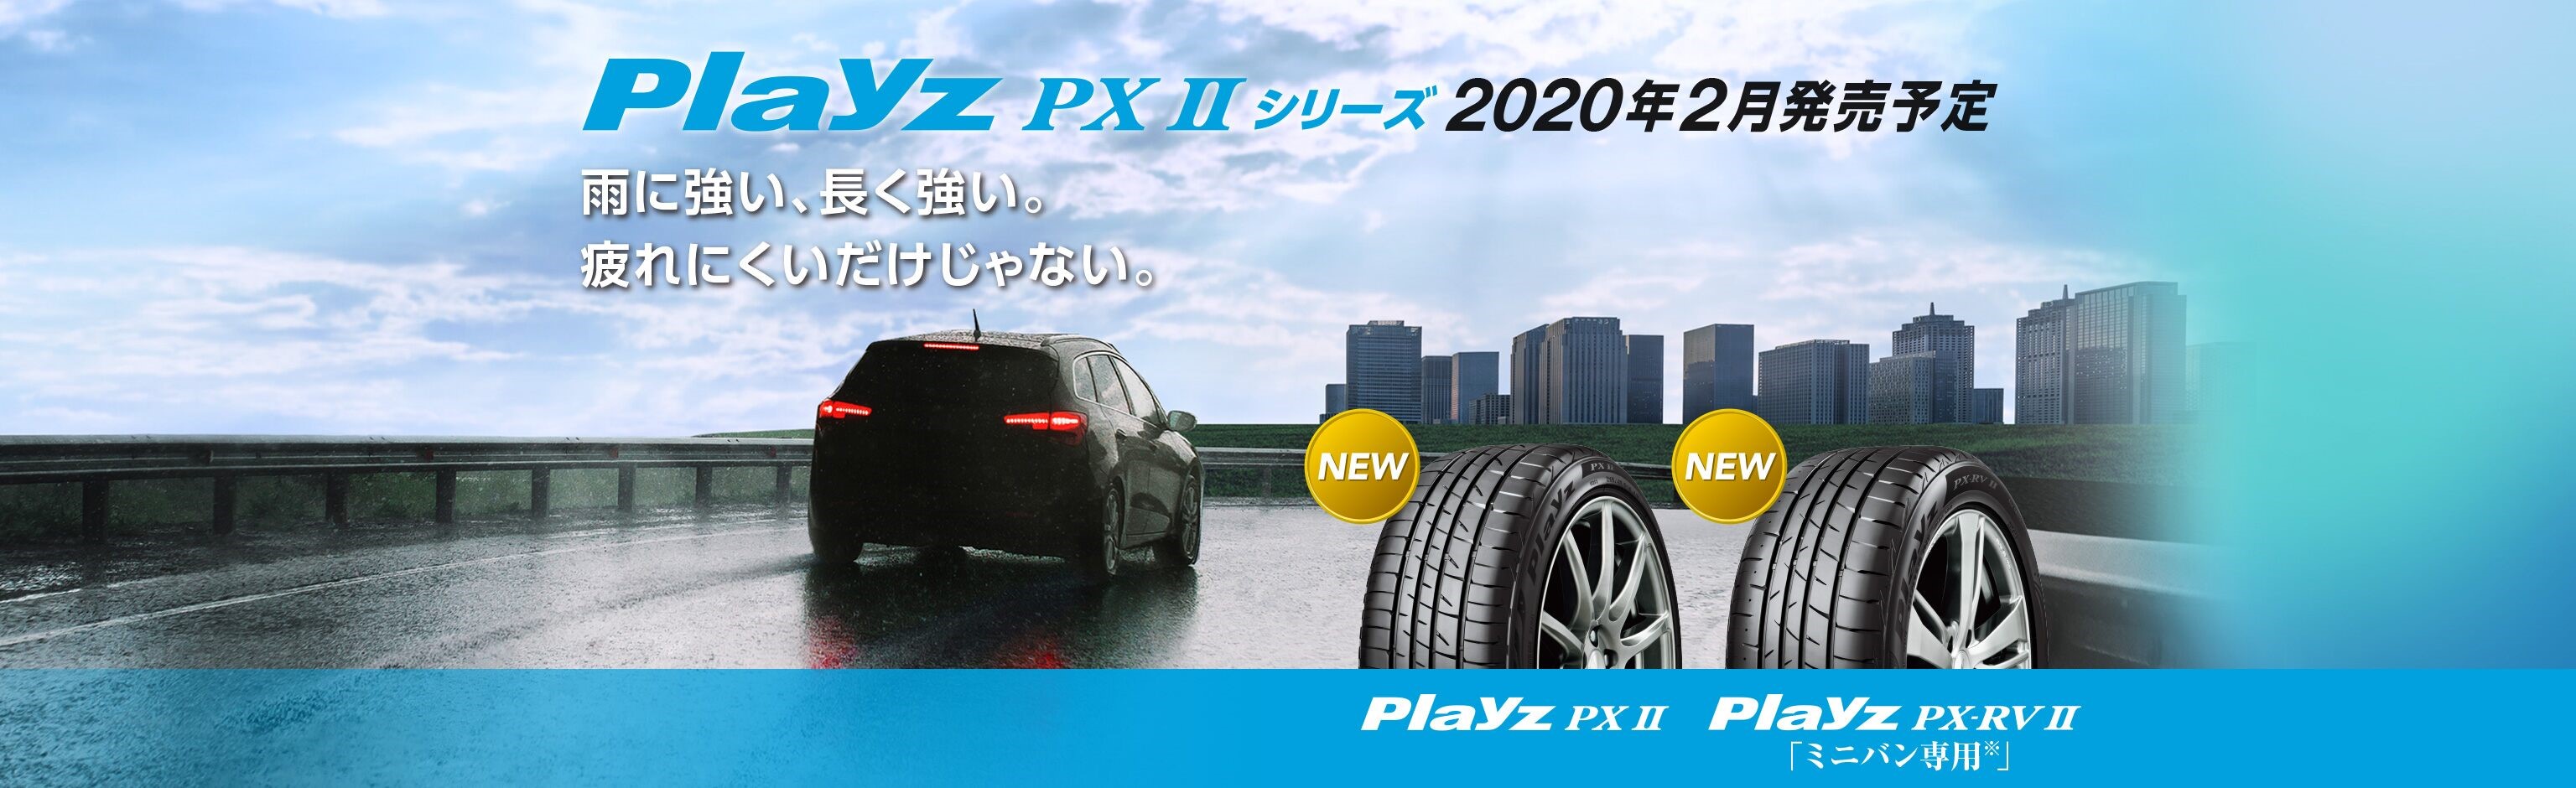 ブリヂストン夏タイヤ新商品!!【Playz PXⅡシリーズ】 | スタッフ日記